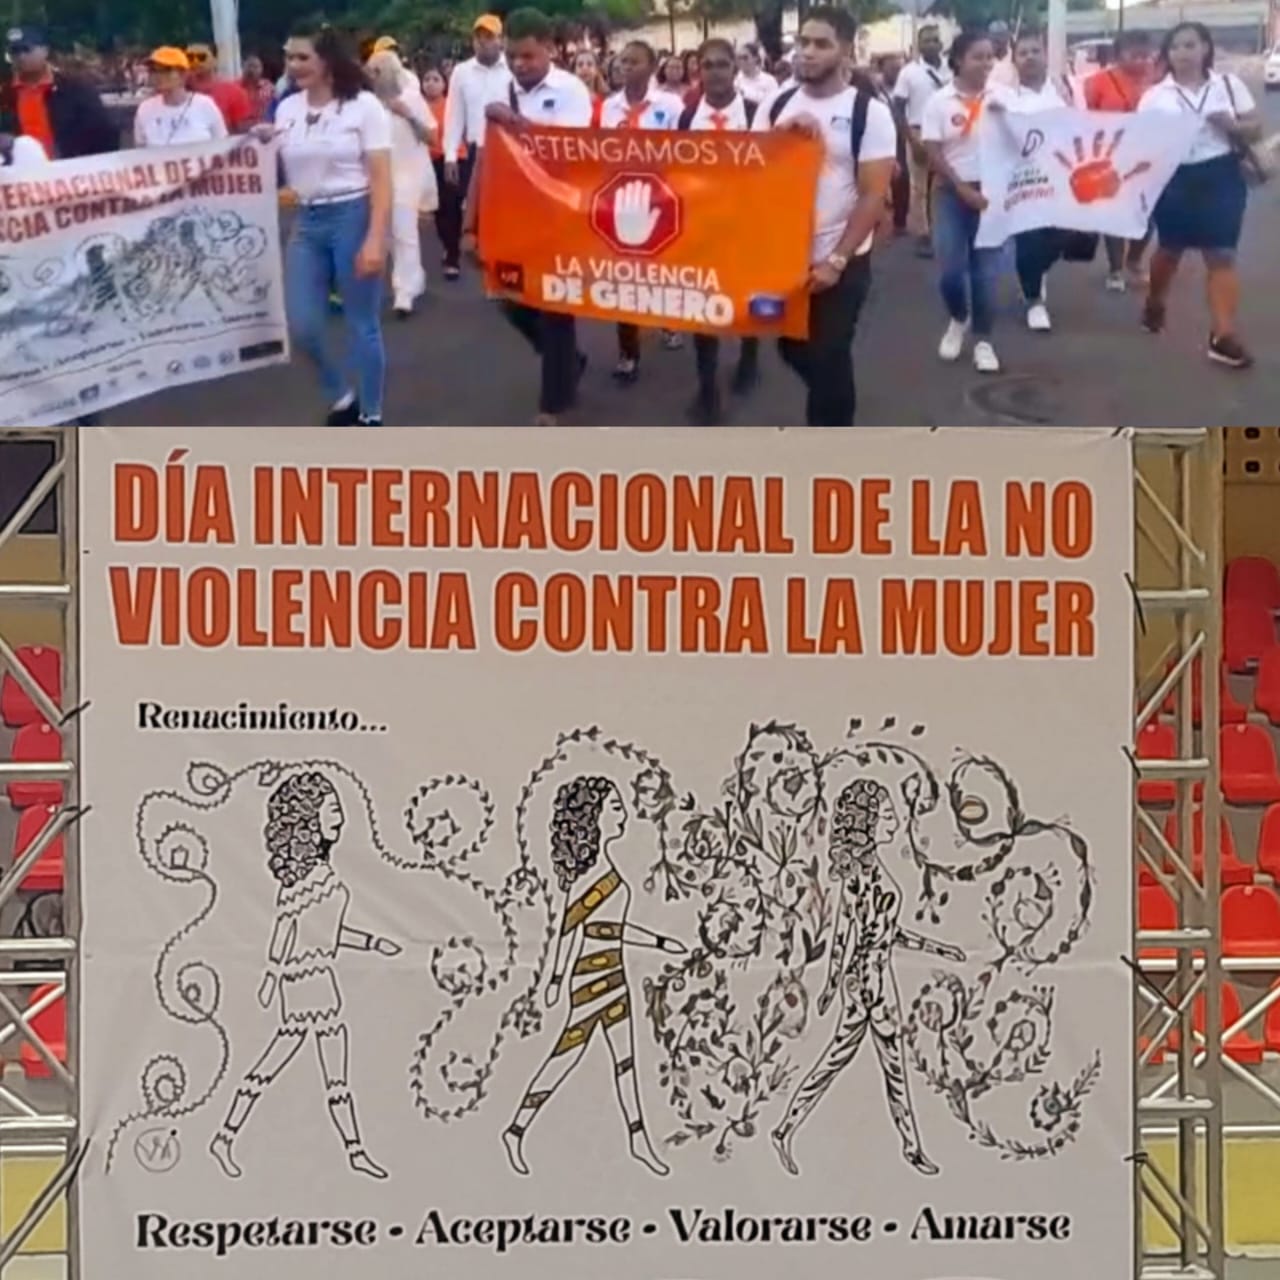 Realizan caminata contra la violencia de género en Puerto Plata 